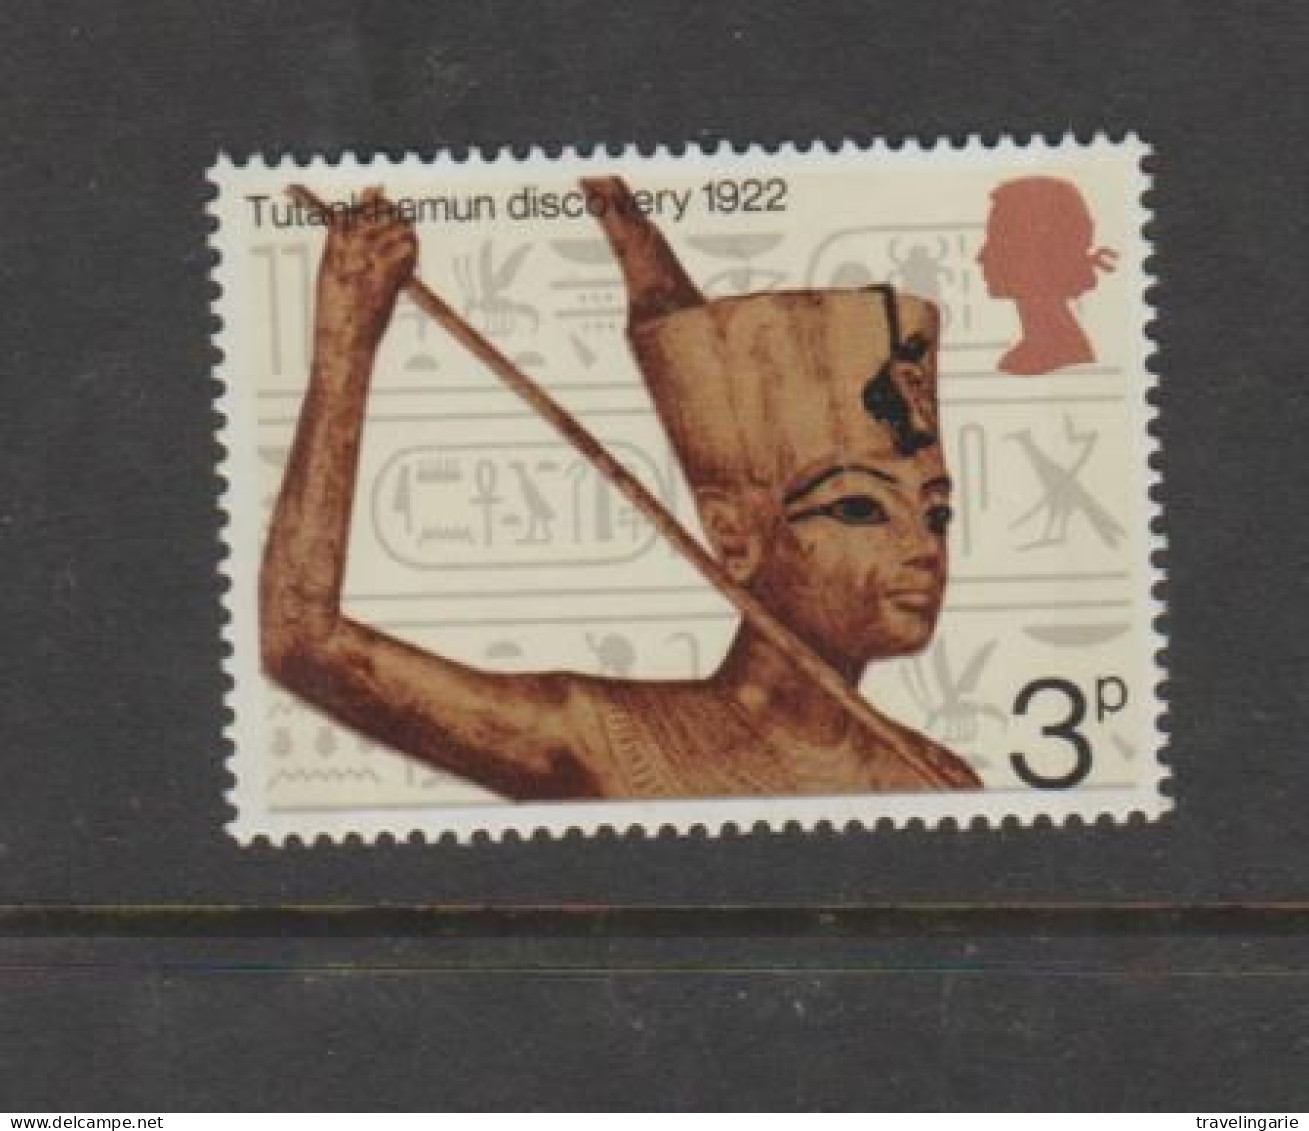 Great Britain 1972 Tutankhamon Discovery 1922 MNH ** - Egyptology